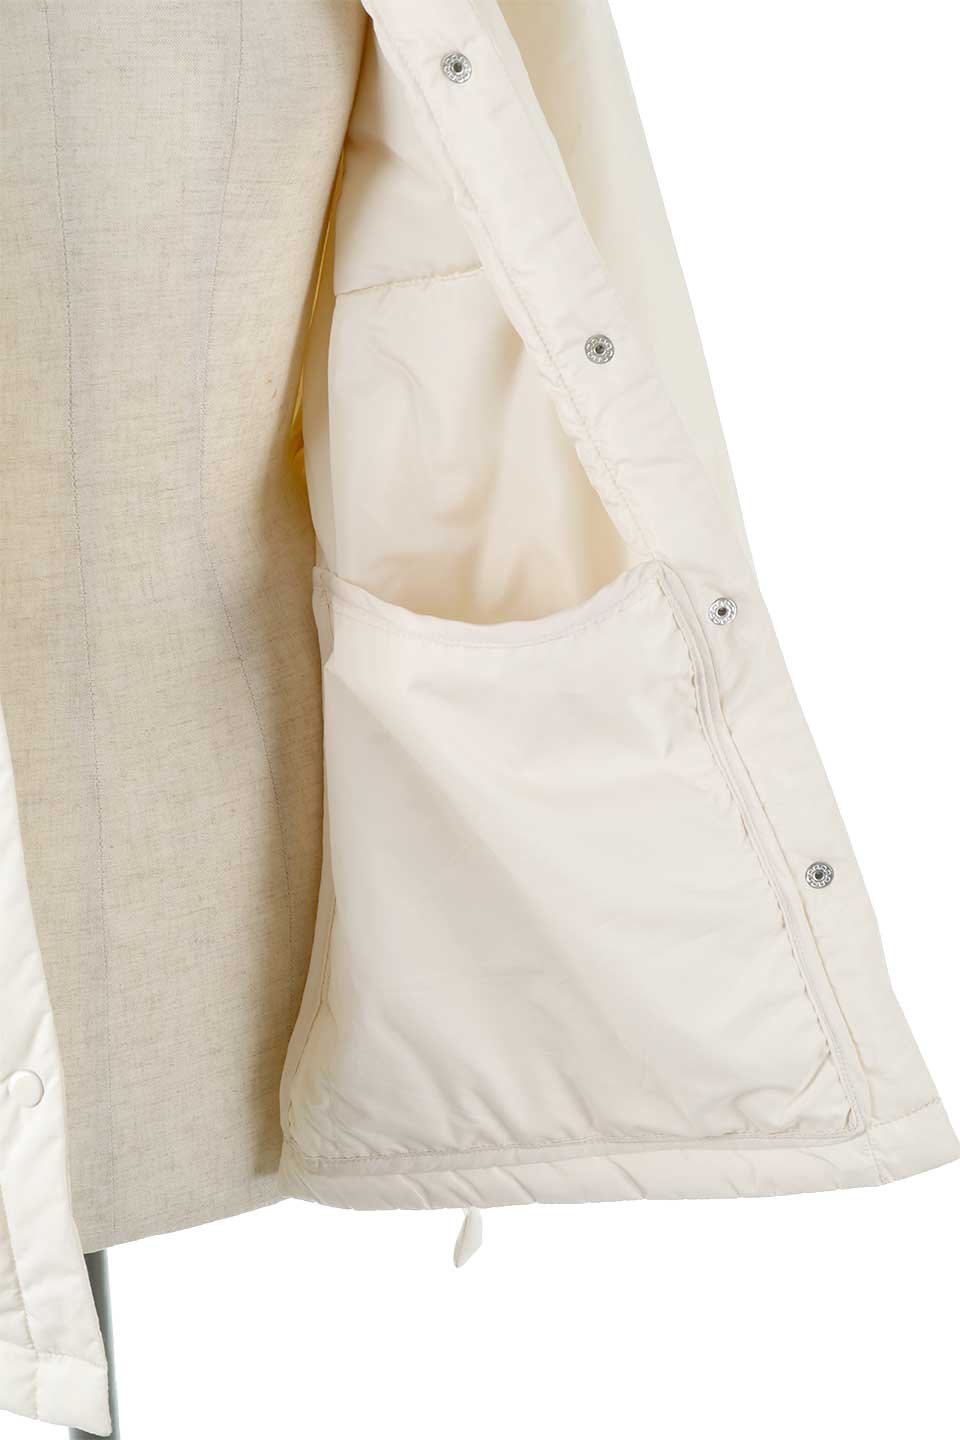 OverSizedPufferShirtsJacketビッグシルエット・中綿シャツジャケット大人カジュアルに最適な海外ファッションのothers（その他インポートアイテム）のアウターやジャケット。オーバーサイズのシャツジャケットに中綿を入れた暖かアイテム。ゆったりデザインなので厚手のニットを着ていてもキレイなシルエットになります。/main-13